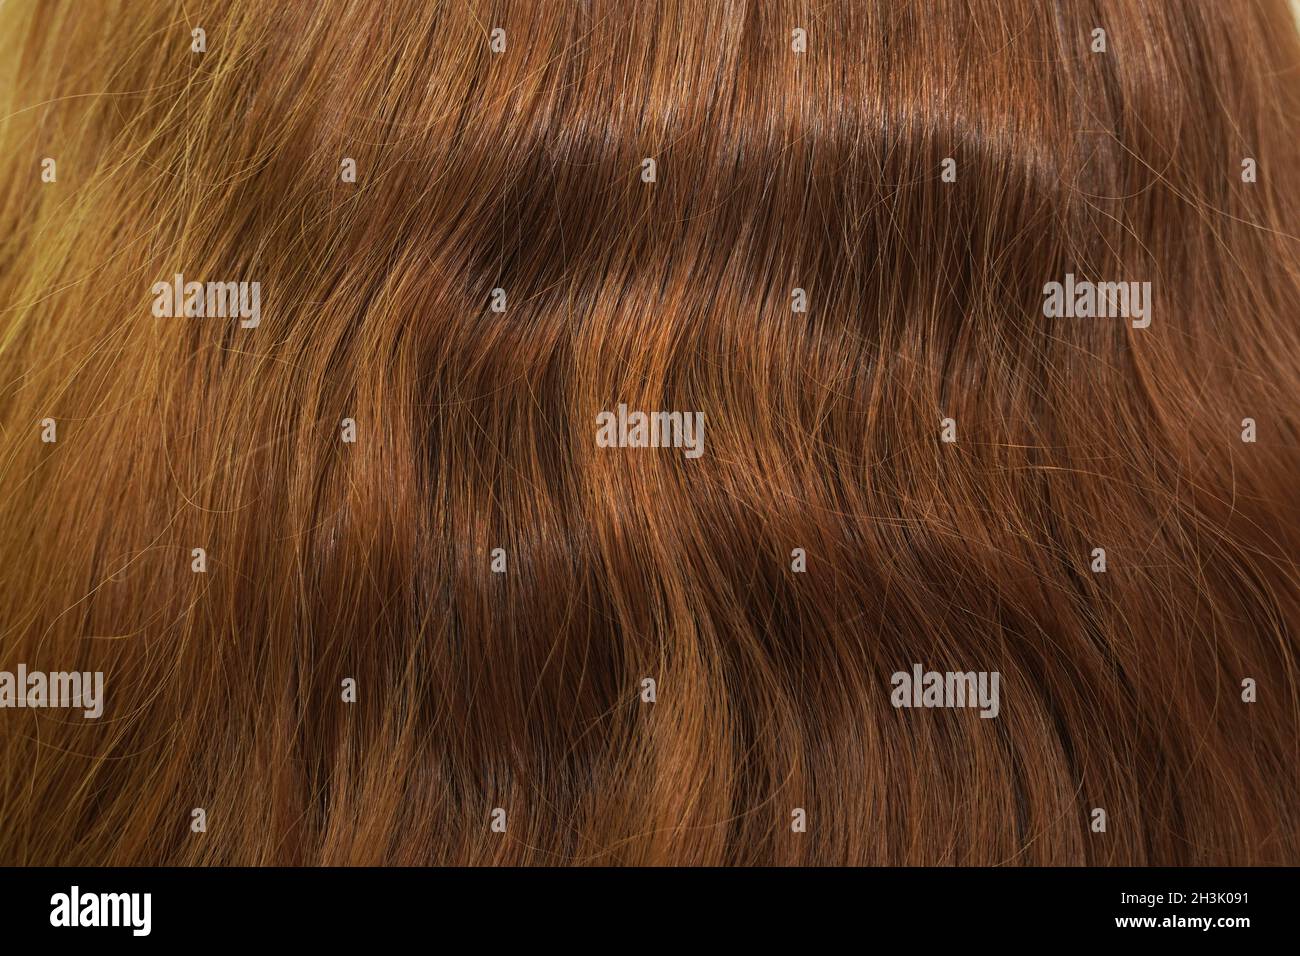 Long natural wavy brown hair. Back view. Stock Photo